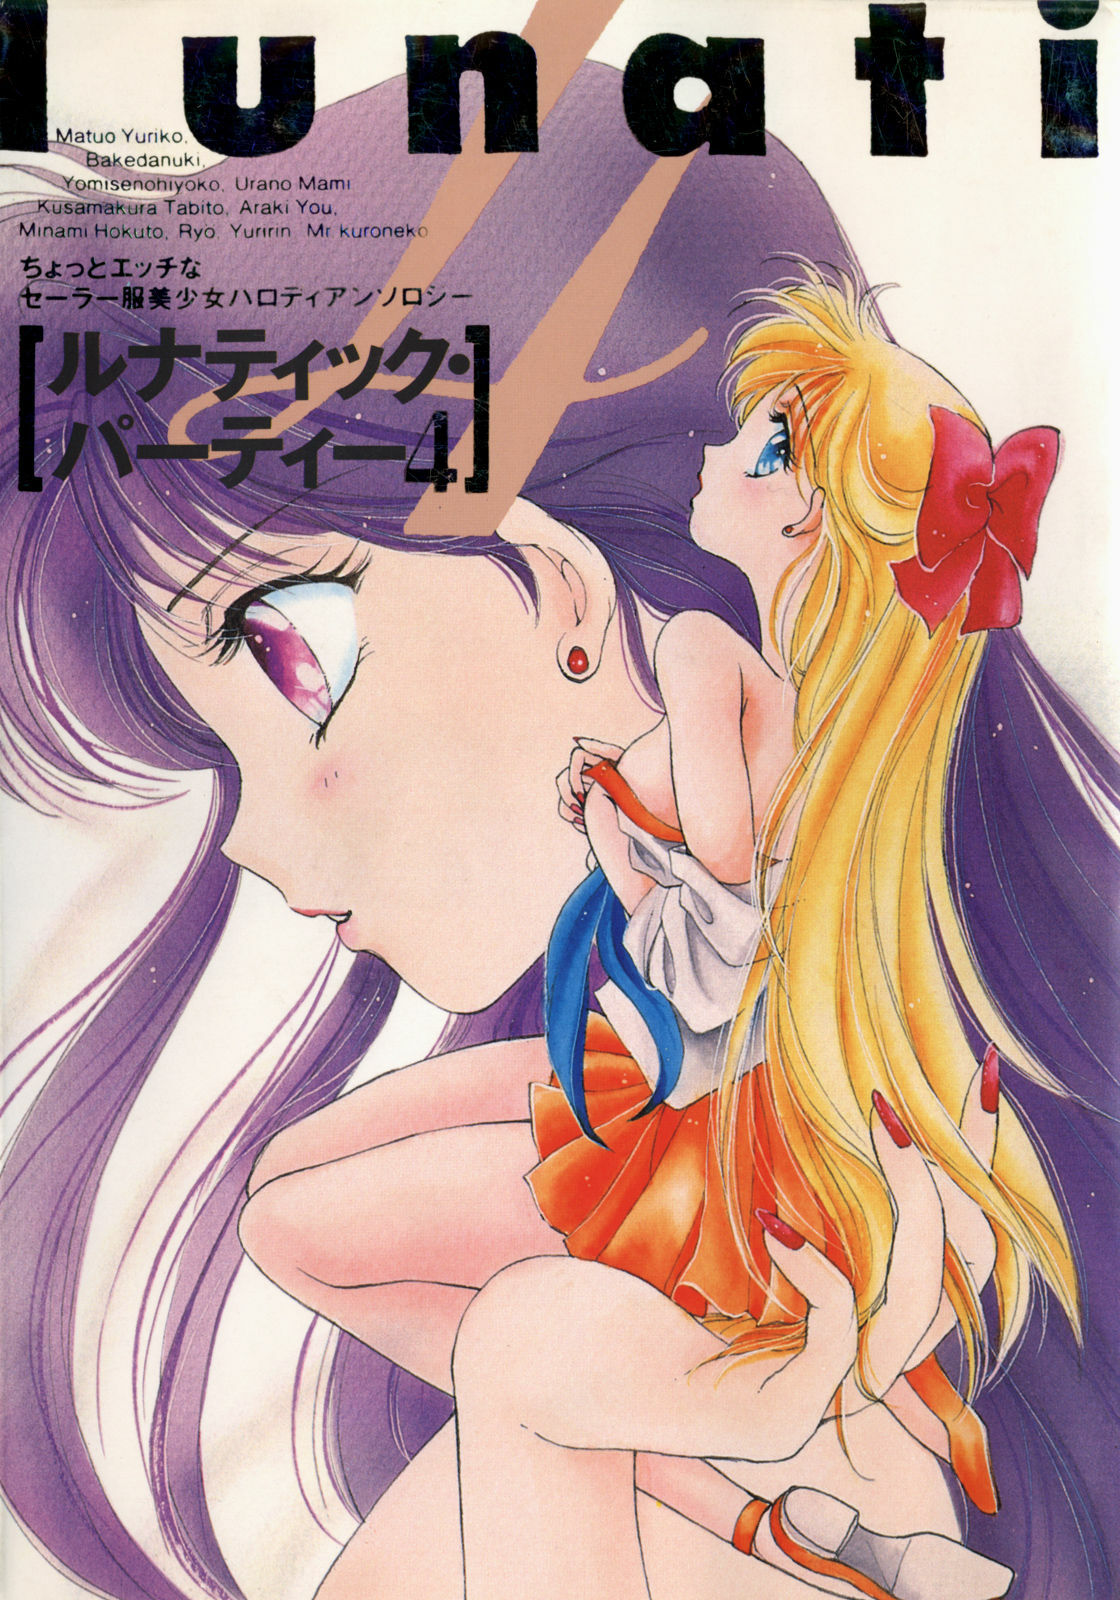 [Anthology] Lunatic Party 4 (Bishoujo Senshi Sailor Moon) page 1 full